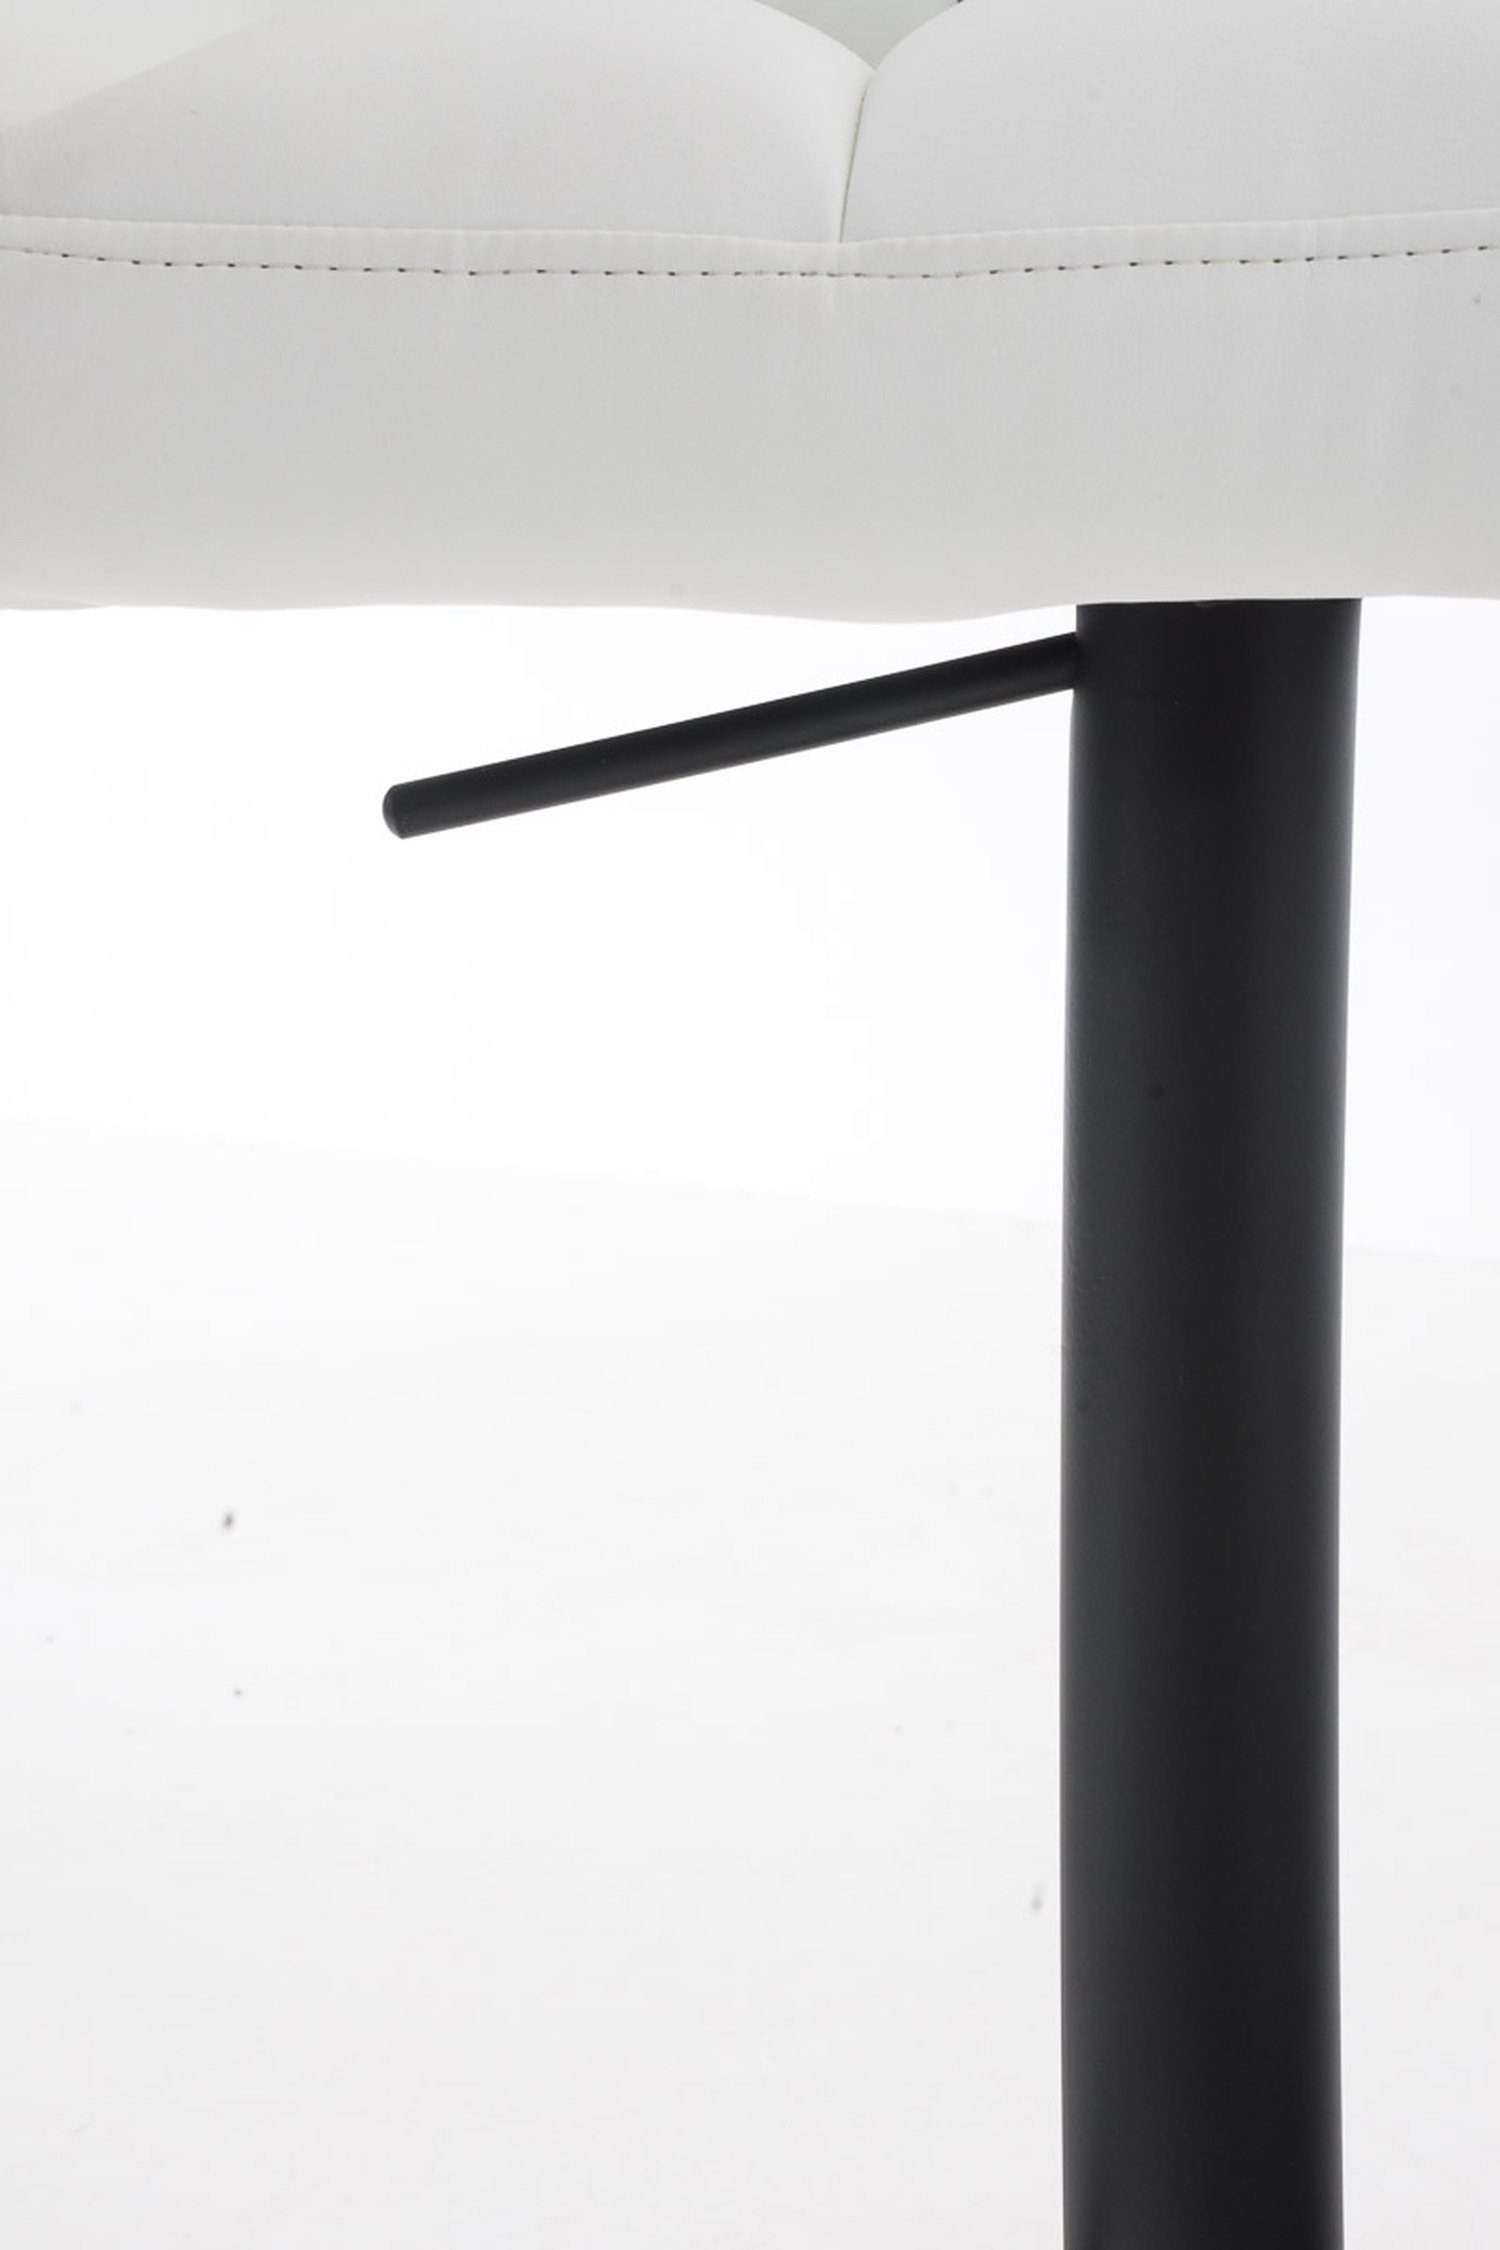 (mit und Weiß matt schwarz - Küche), - & drehbar Fußstütze - Barhocker Hocker Sitzfläche: Metall Damaso TPFLiving Theke für Rückenlehne Kunstleder 360°